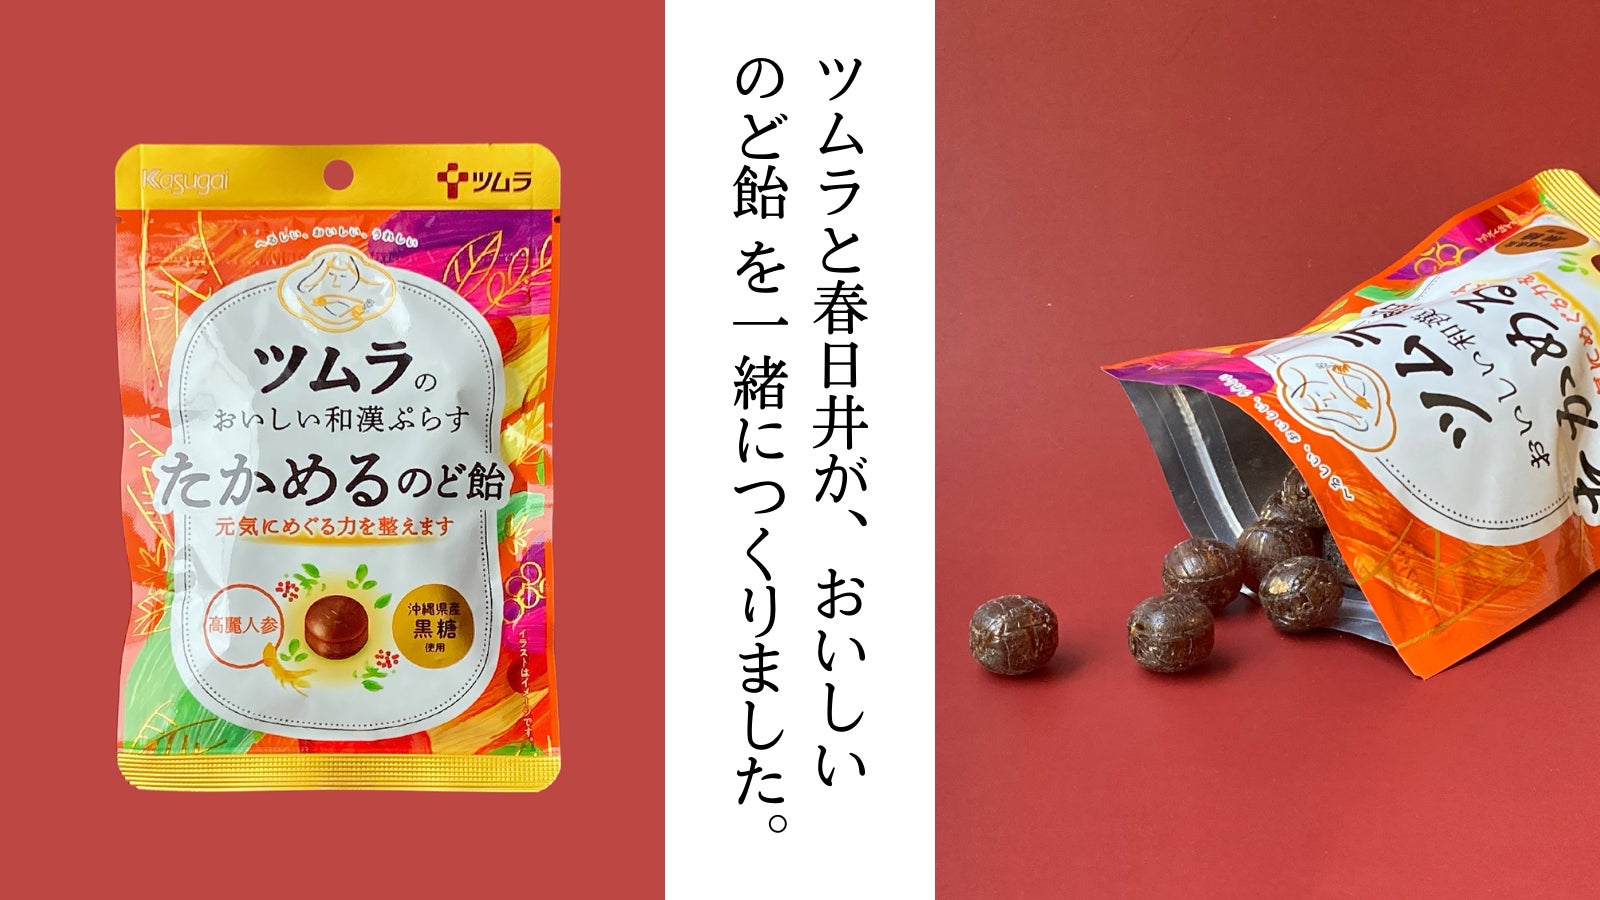 春日井製菓がツムラと初コラボ！「ツムラのおいしい和漢ぷらす たかめるのど飴」、いよいよスーパーマーケットでも発売開始！